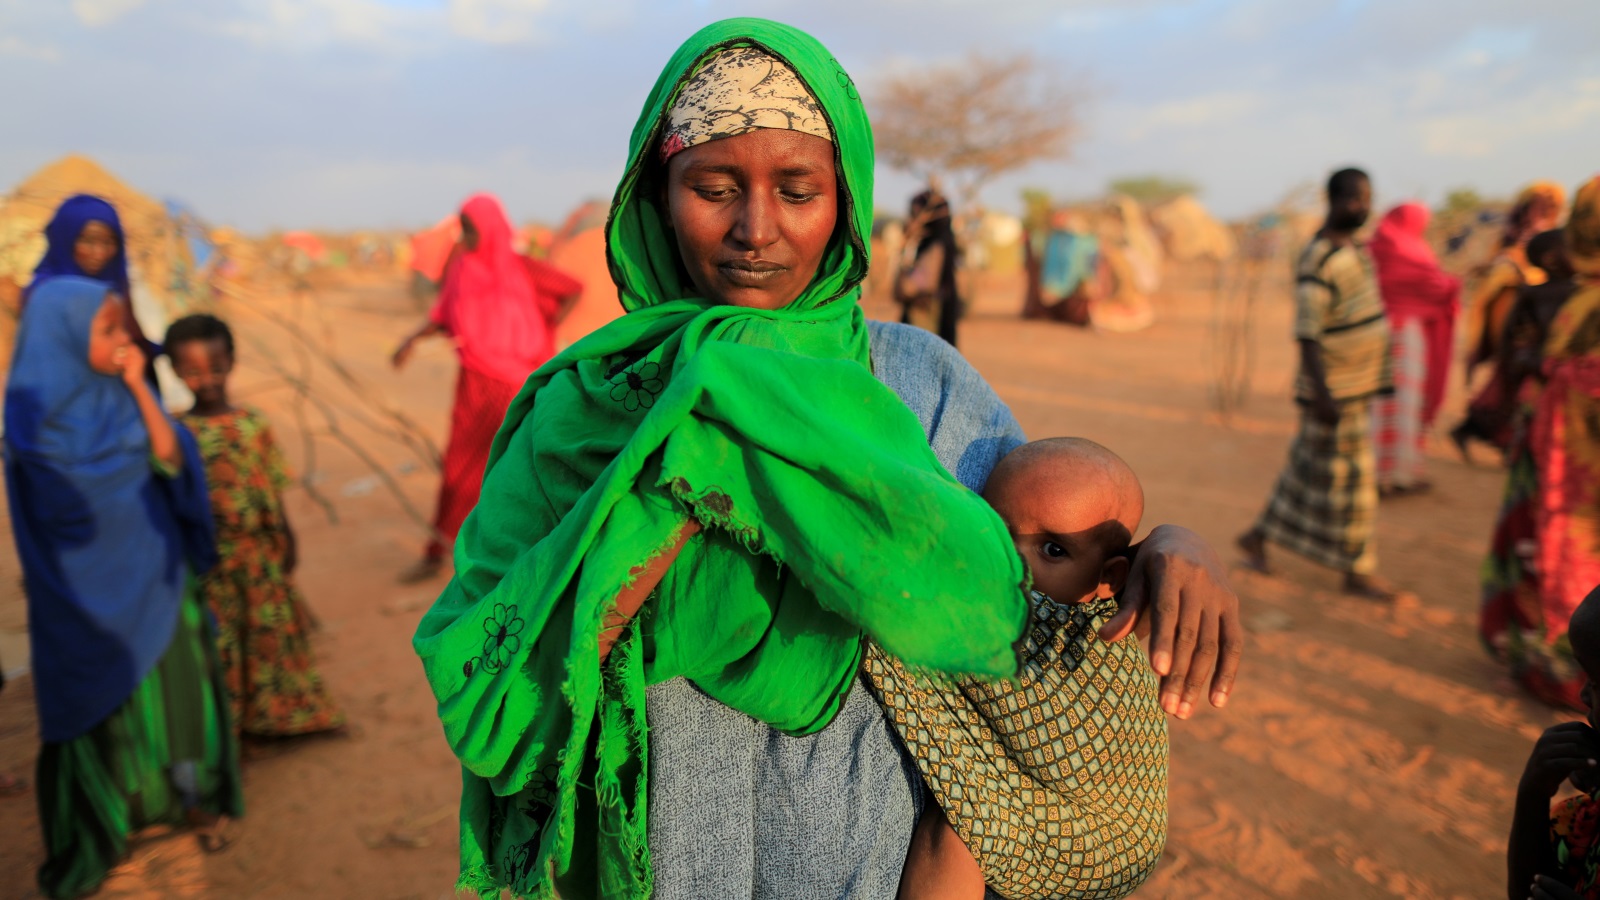 أمل الصومال المتحد، الذي ينبذ العنصرية والقبلية؛ صار من التاريخ وحديث الناس، أما في الواقع فهي قبلية قد تشبعت بالفدرالية؛ وأعطي لها الضوء الأخضر في إزالة آخر قطرة لأمل الأخوية الصومالية